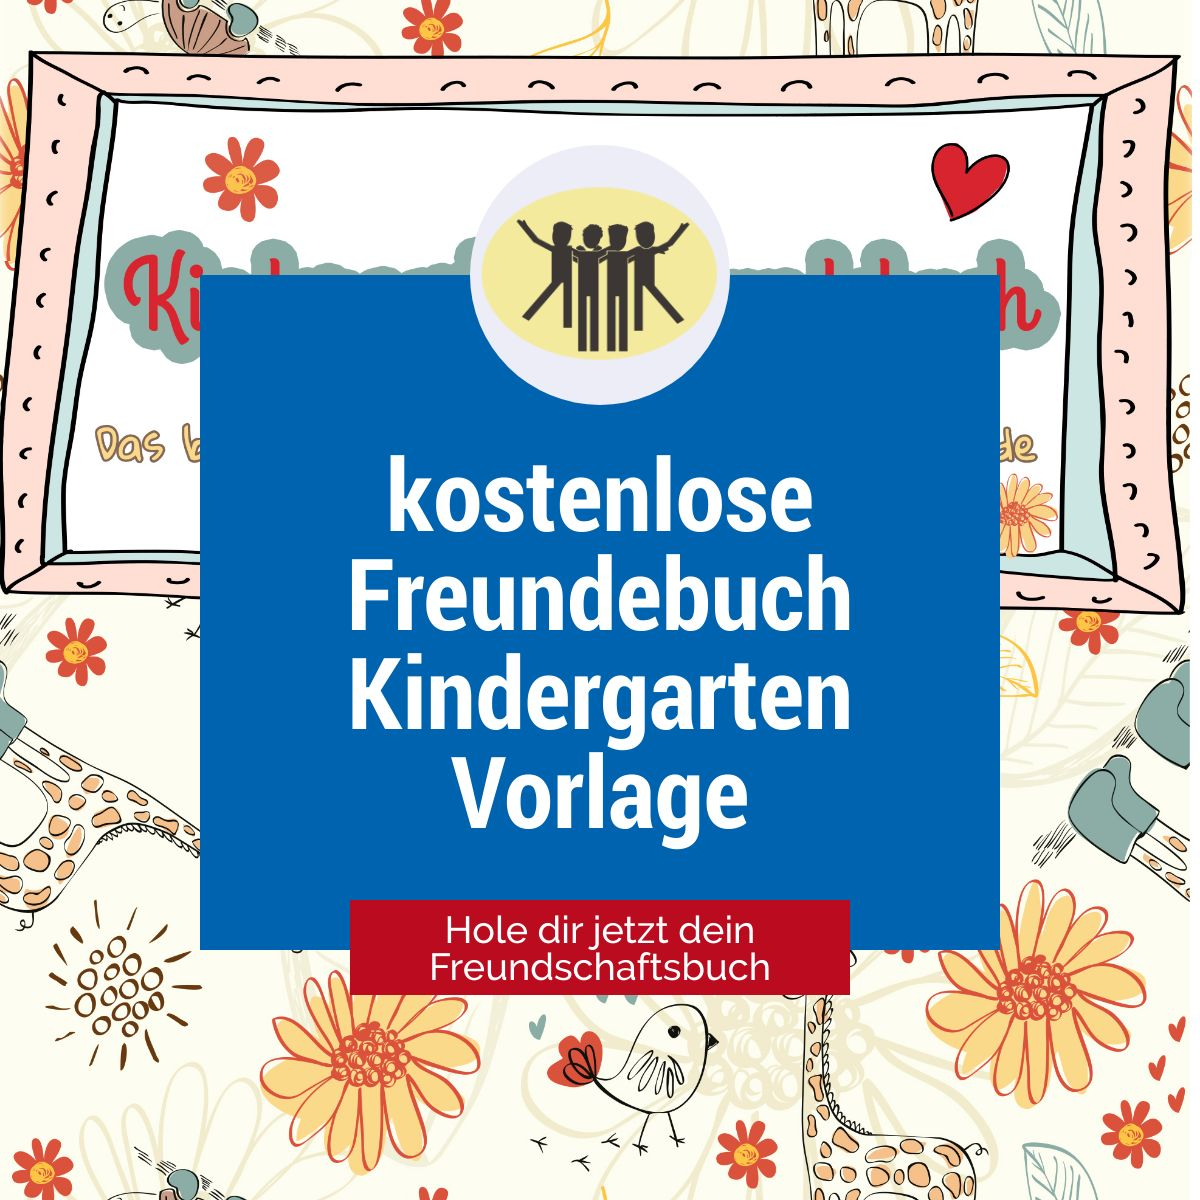 ♥ Kostenloses Freundebuch Kindergarten Selbst gestalten